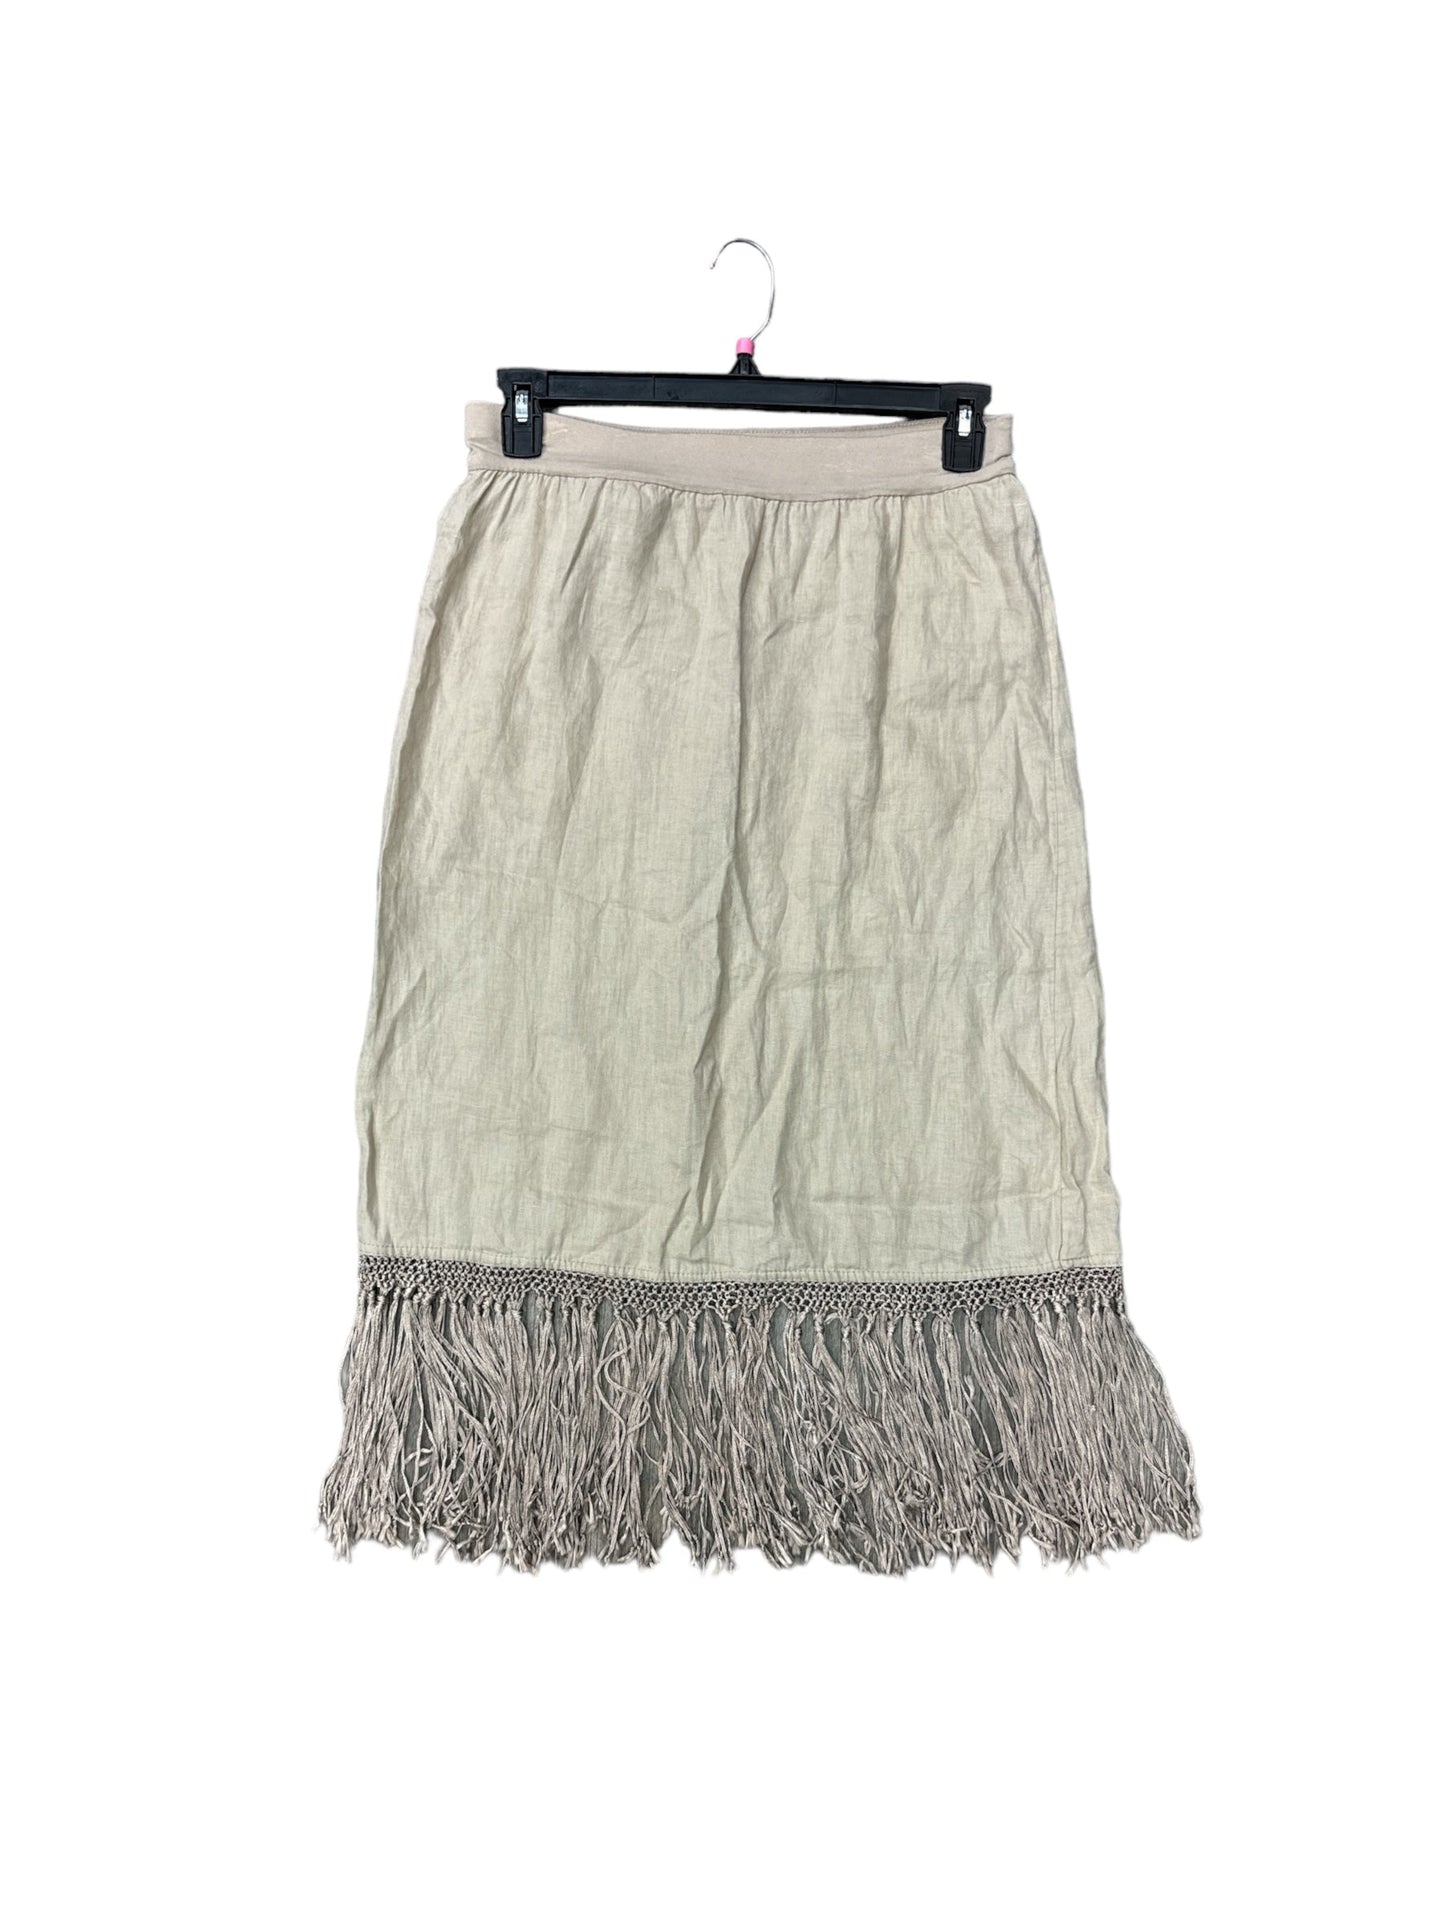 Tan Skirt Midi Chicos, Size 6